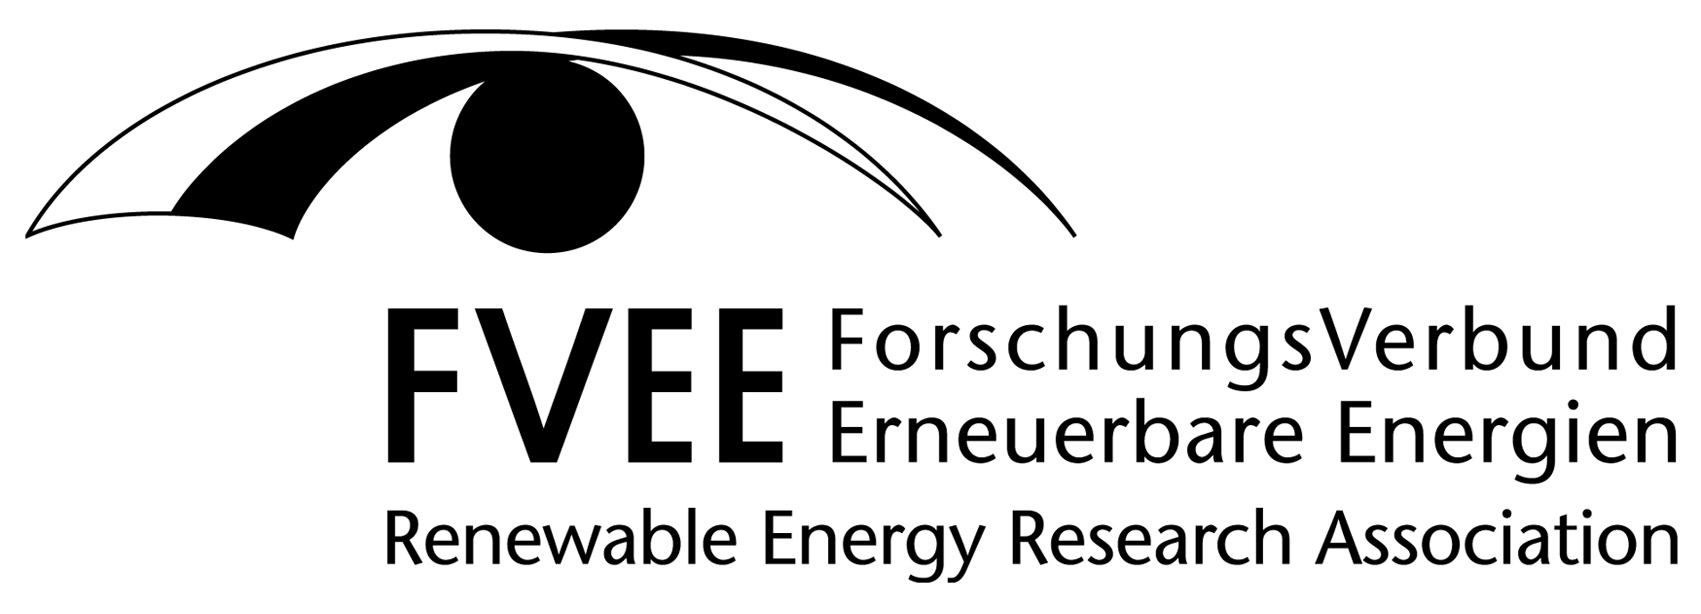 FVEE-Logo in schwarz-weiß